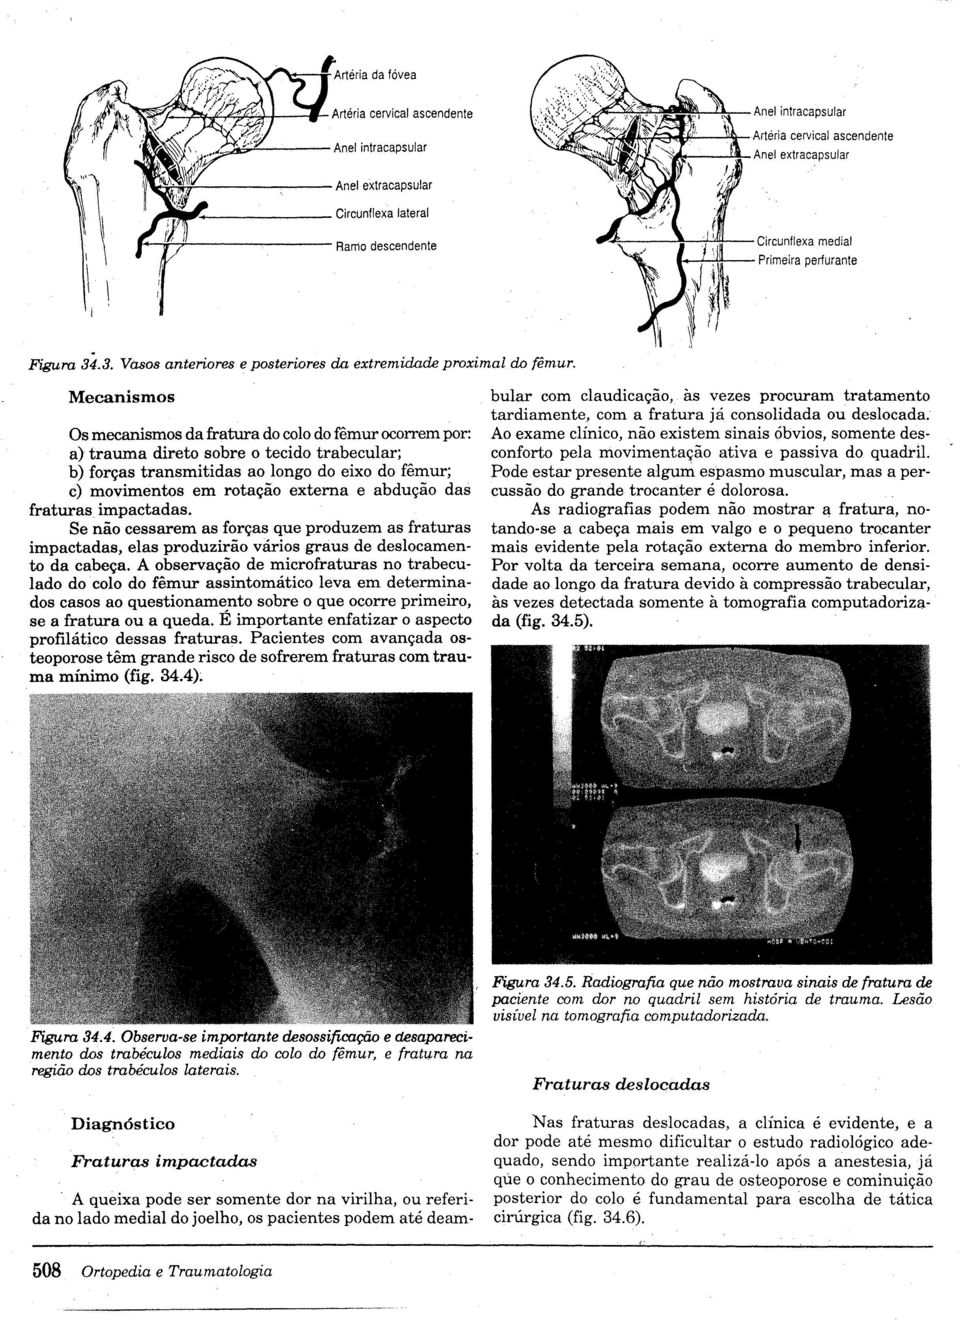 Mecanismos Os mecanismos dafratura do colo do fêmur ocorrem por: a) trauma direto sobre o tecido trabecular; b) forças transmitidas ao longo do eixo do fêmur; c) movimentos em rotação externa e